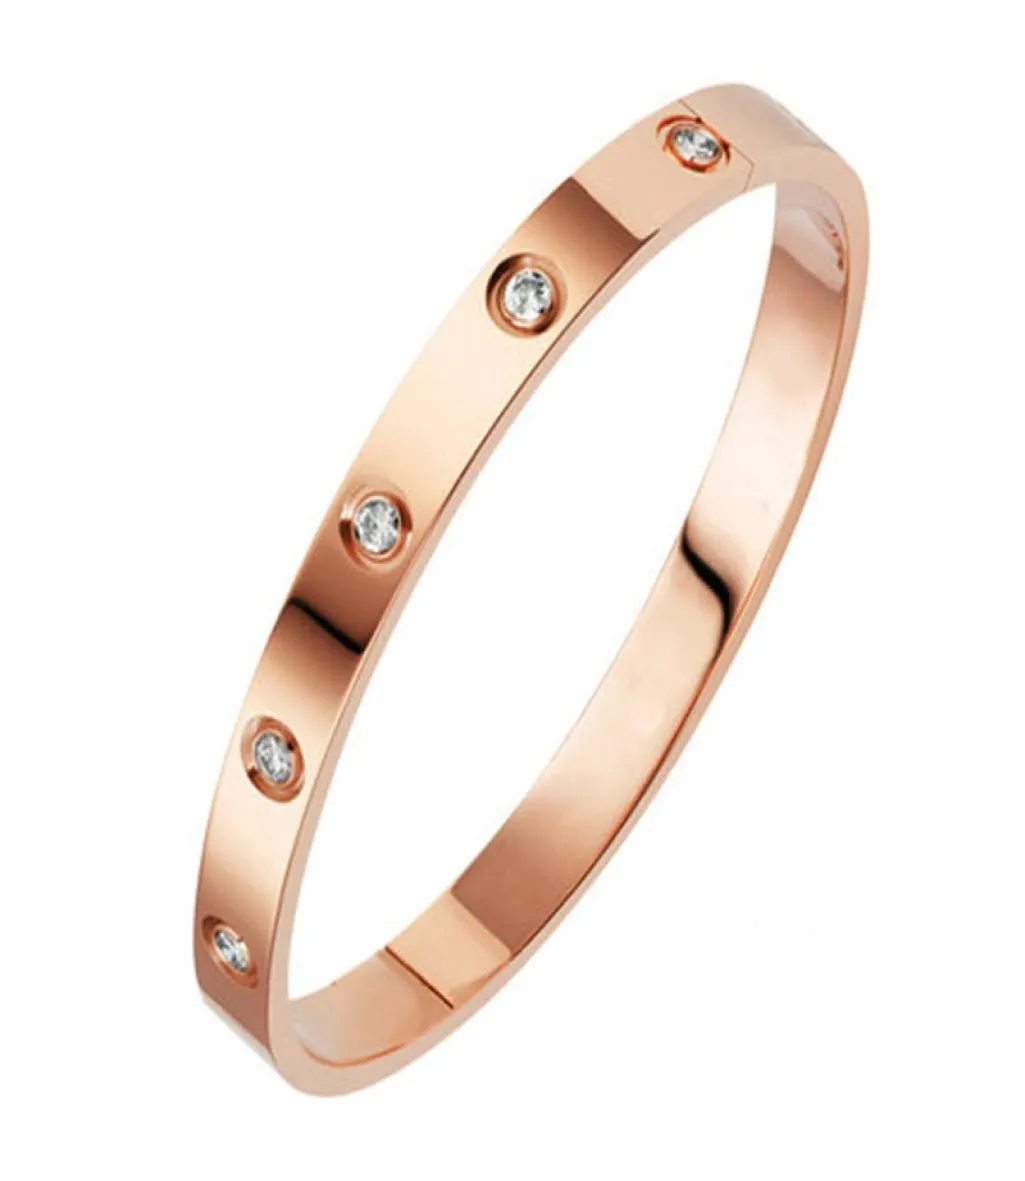 Neue Mode Klassische Liebhaber Armbänder Für Frauen Rose Gold Silber Farbe Strass Armband Manschette Einfache Trendy Schmuck Gift7389392